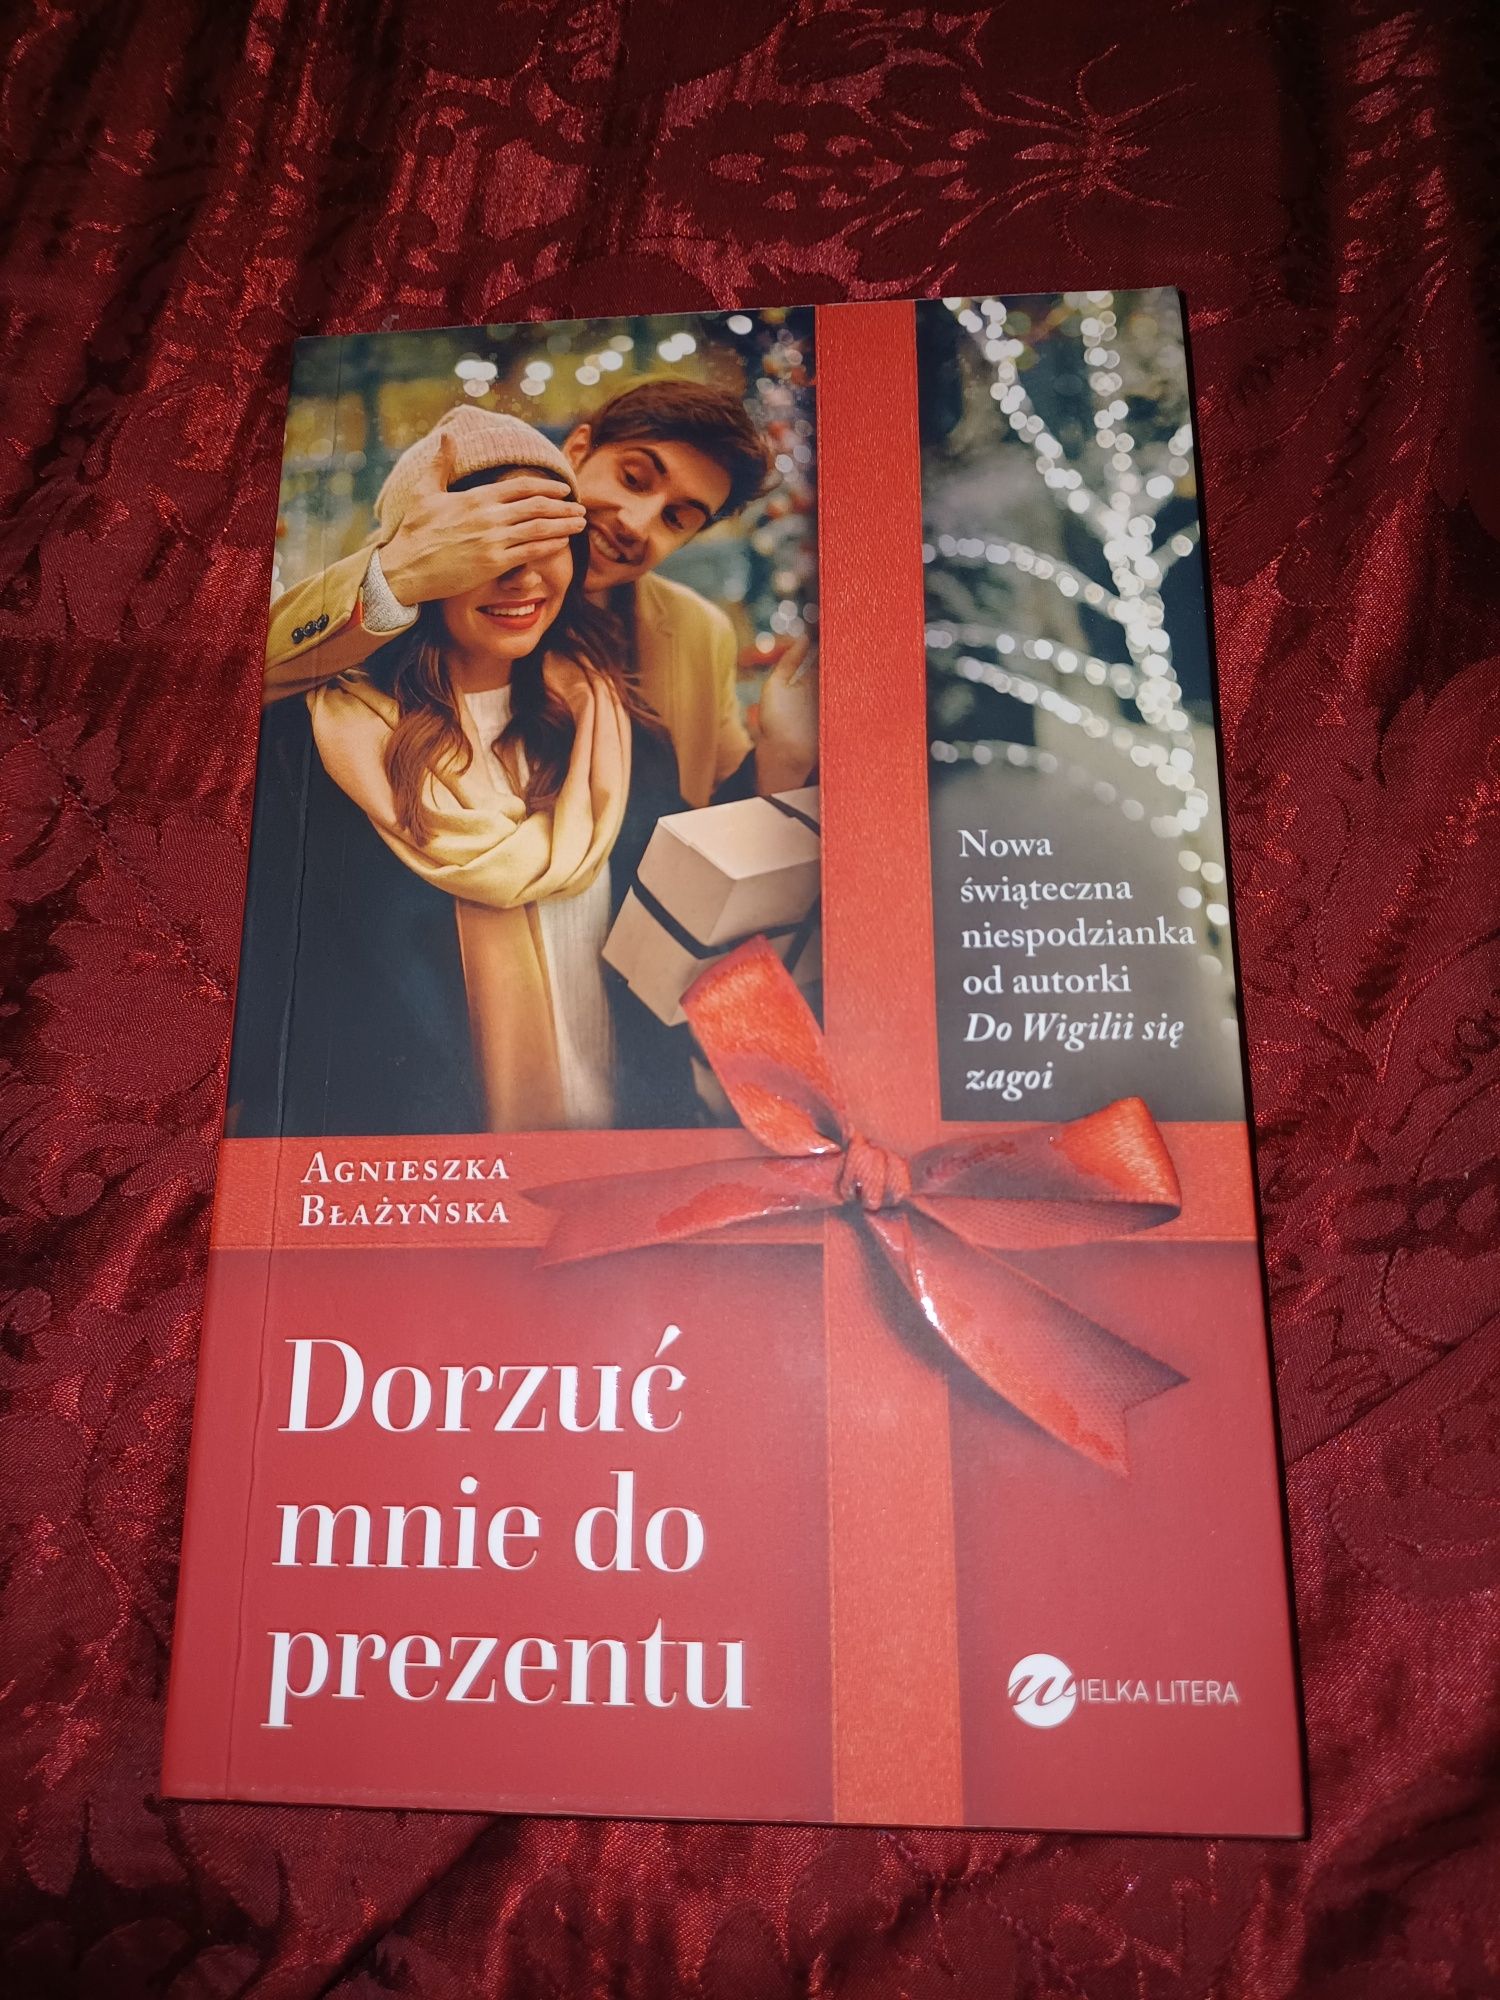 Nowa książka - Dorzuć mnie do prezentu - Agnieszka Błażyńska